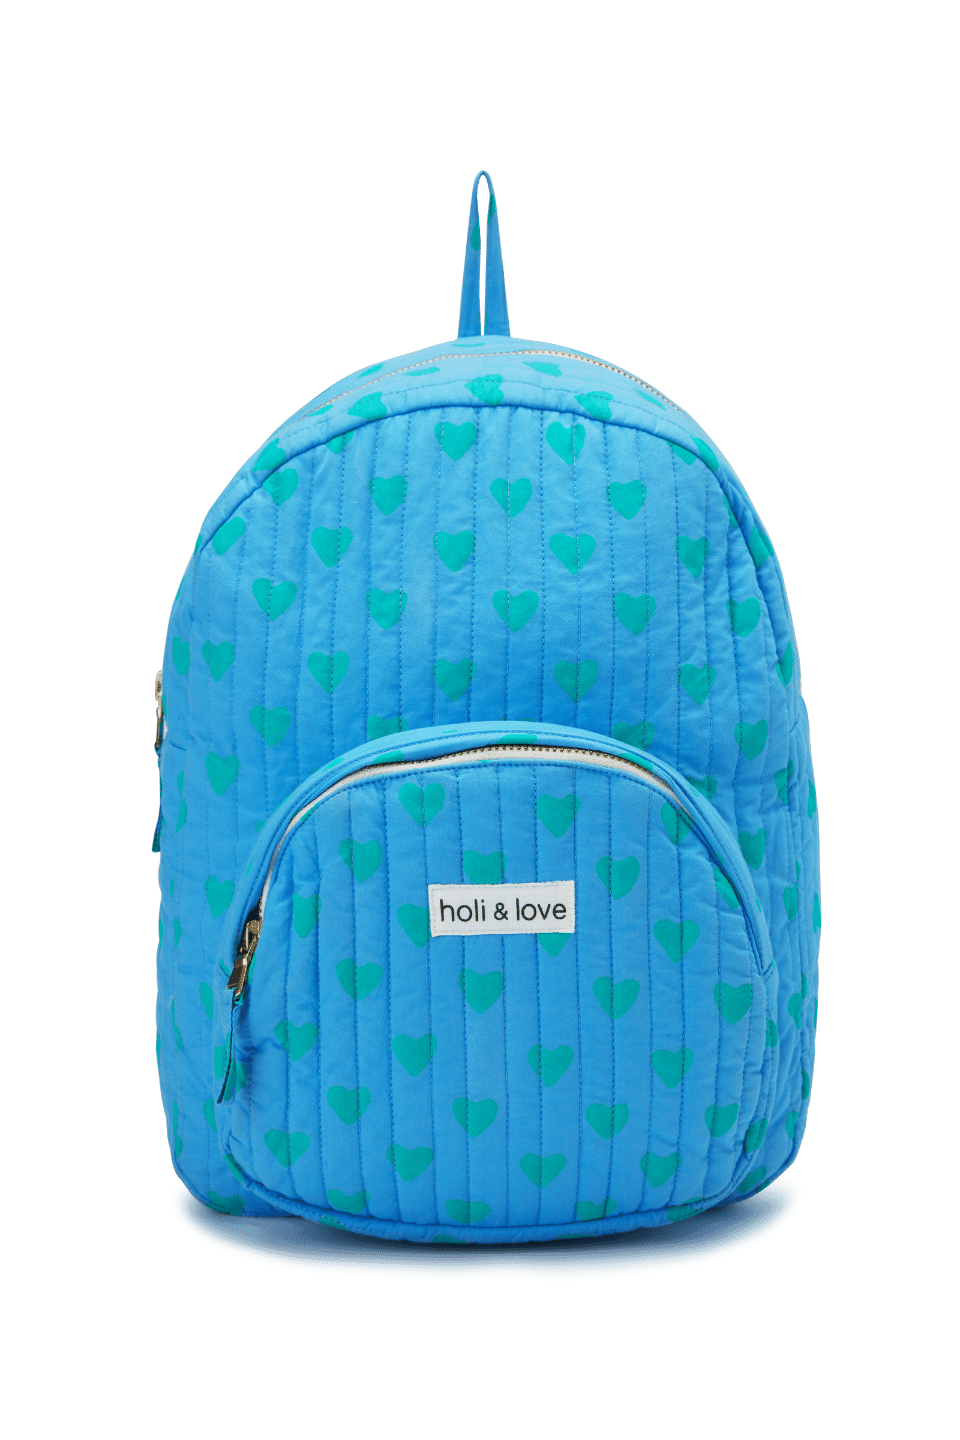 Sac à dos pour enfant avec une poche extérieure, fermeture zip, couleur bleu Hawaii motif cœurs verts, coton biologique, accessoire de mode ethique en coton bio mixte unisexe